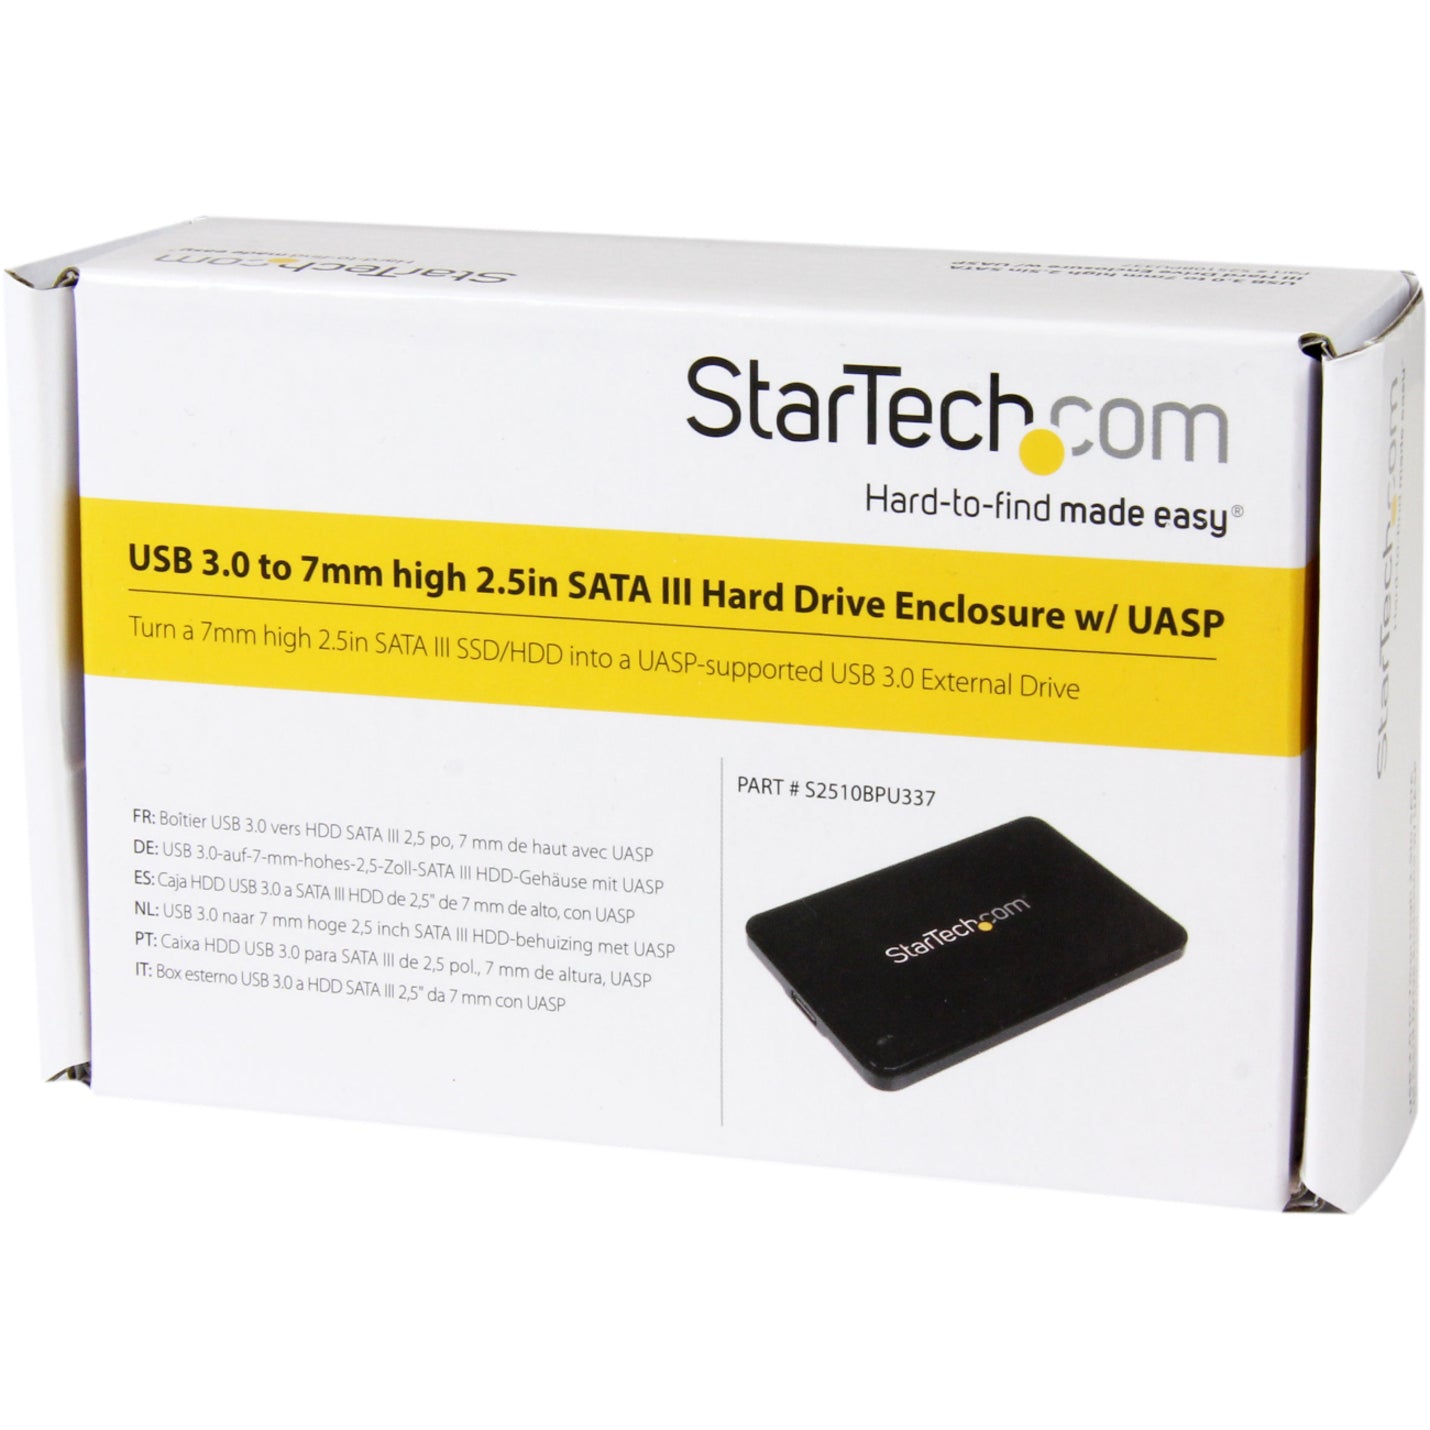 StarTech.com S2510BPU337 2.5in USB 3.0 SATA Hard Drive Enclosure w/ UASP, Slim 7mm SATA III SSD/HDD, Fast Data Transfer